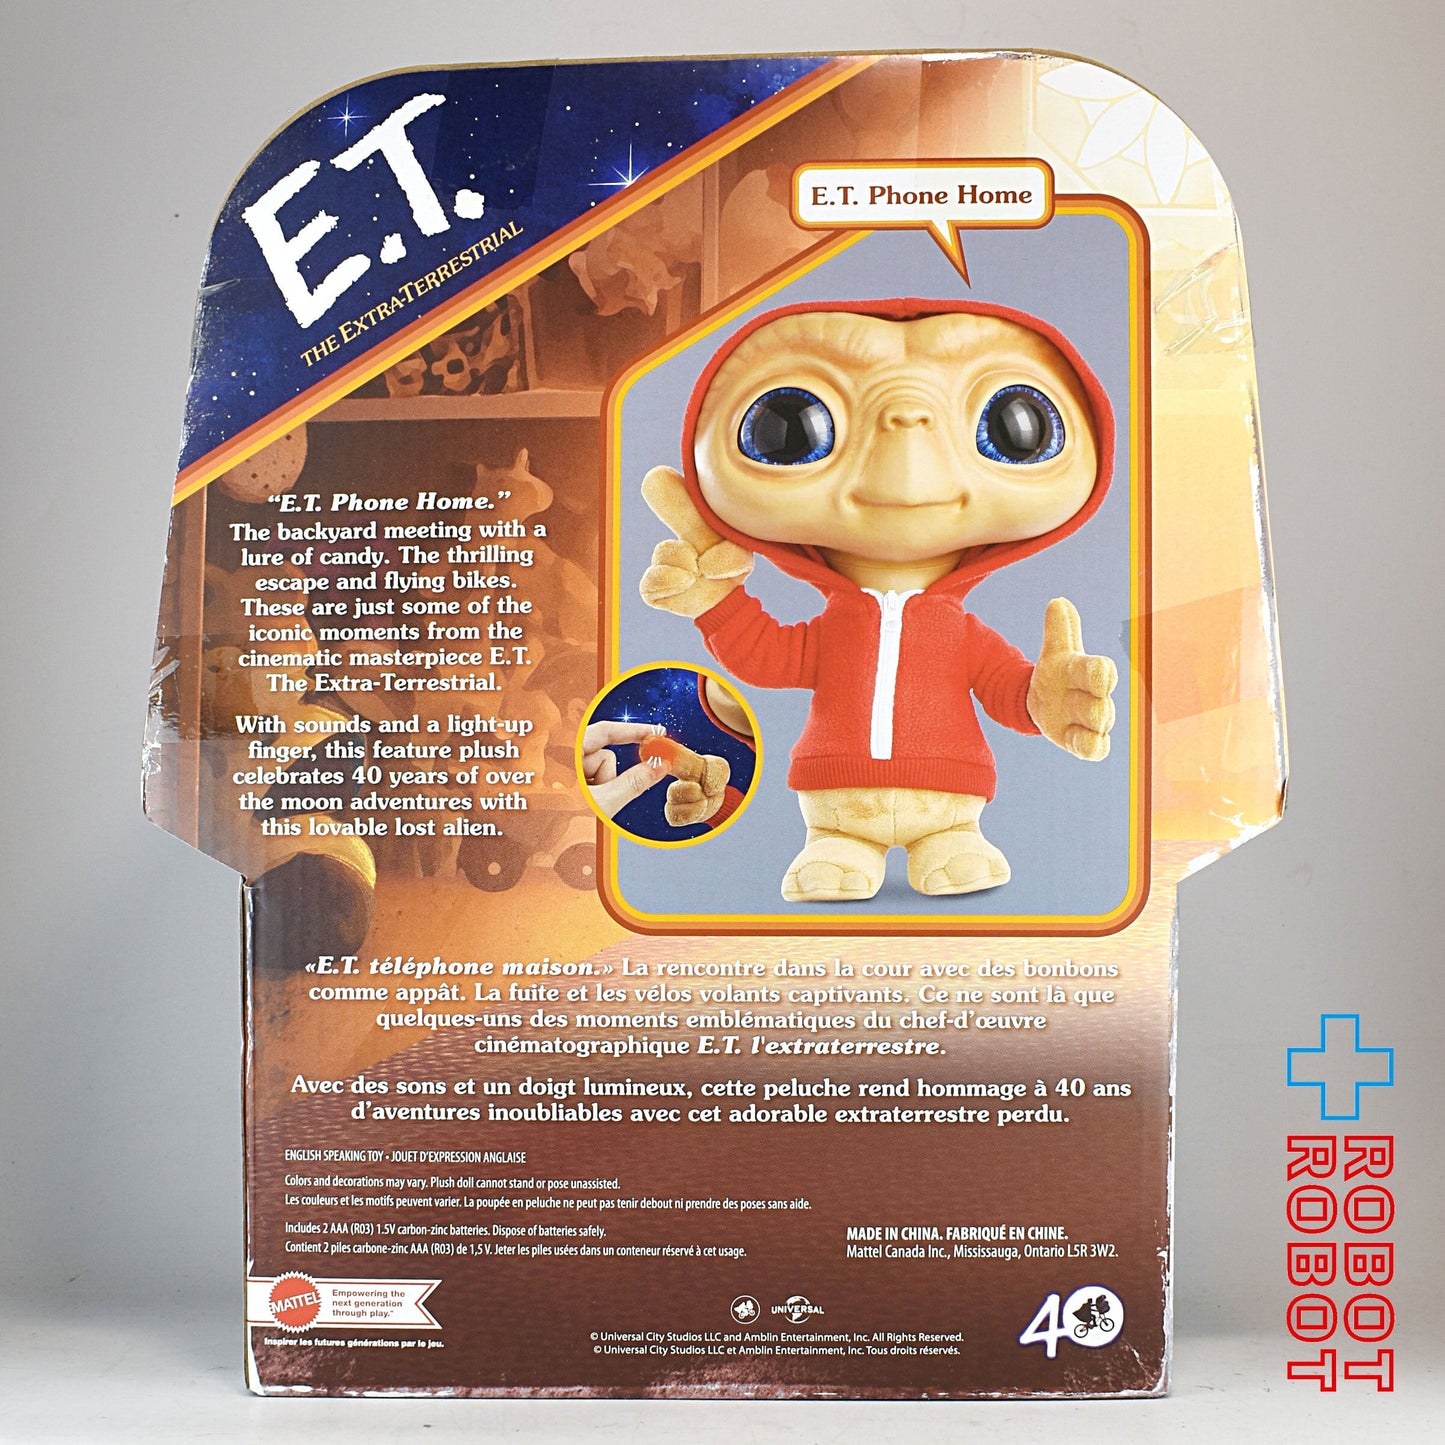 マテル E.T. 40周年記念 トーキングぬいぐるみ人形